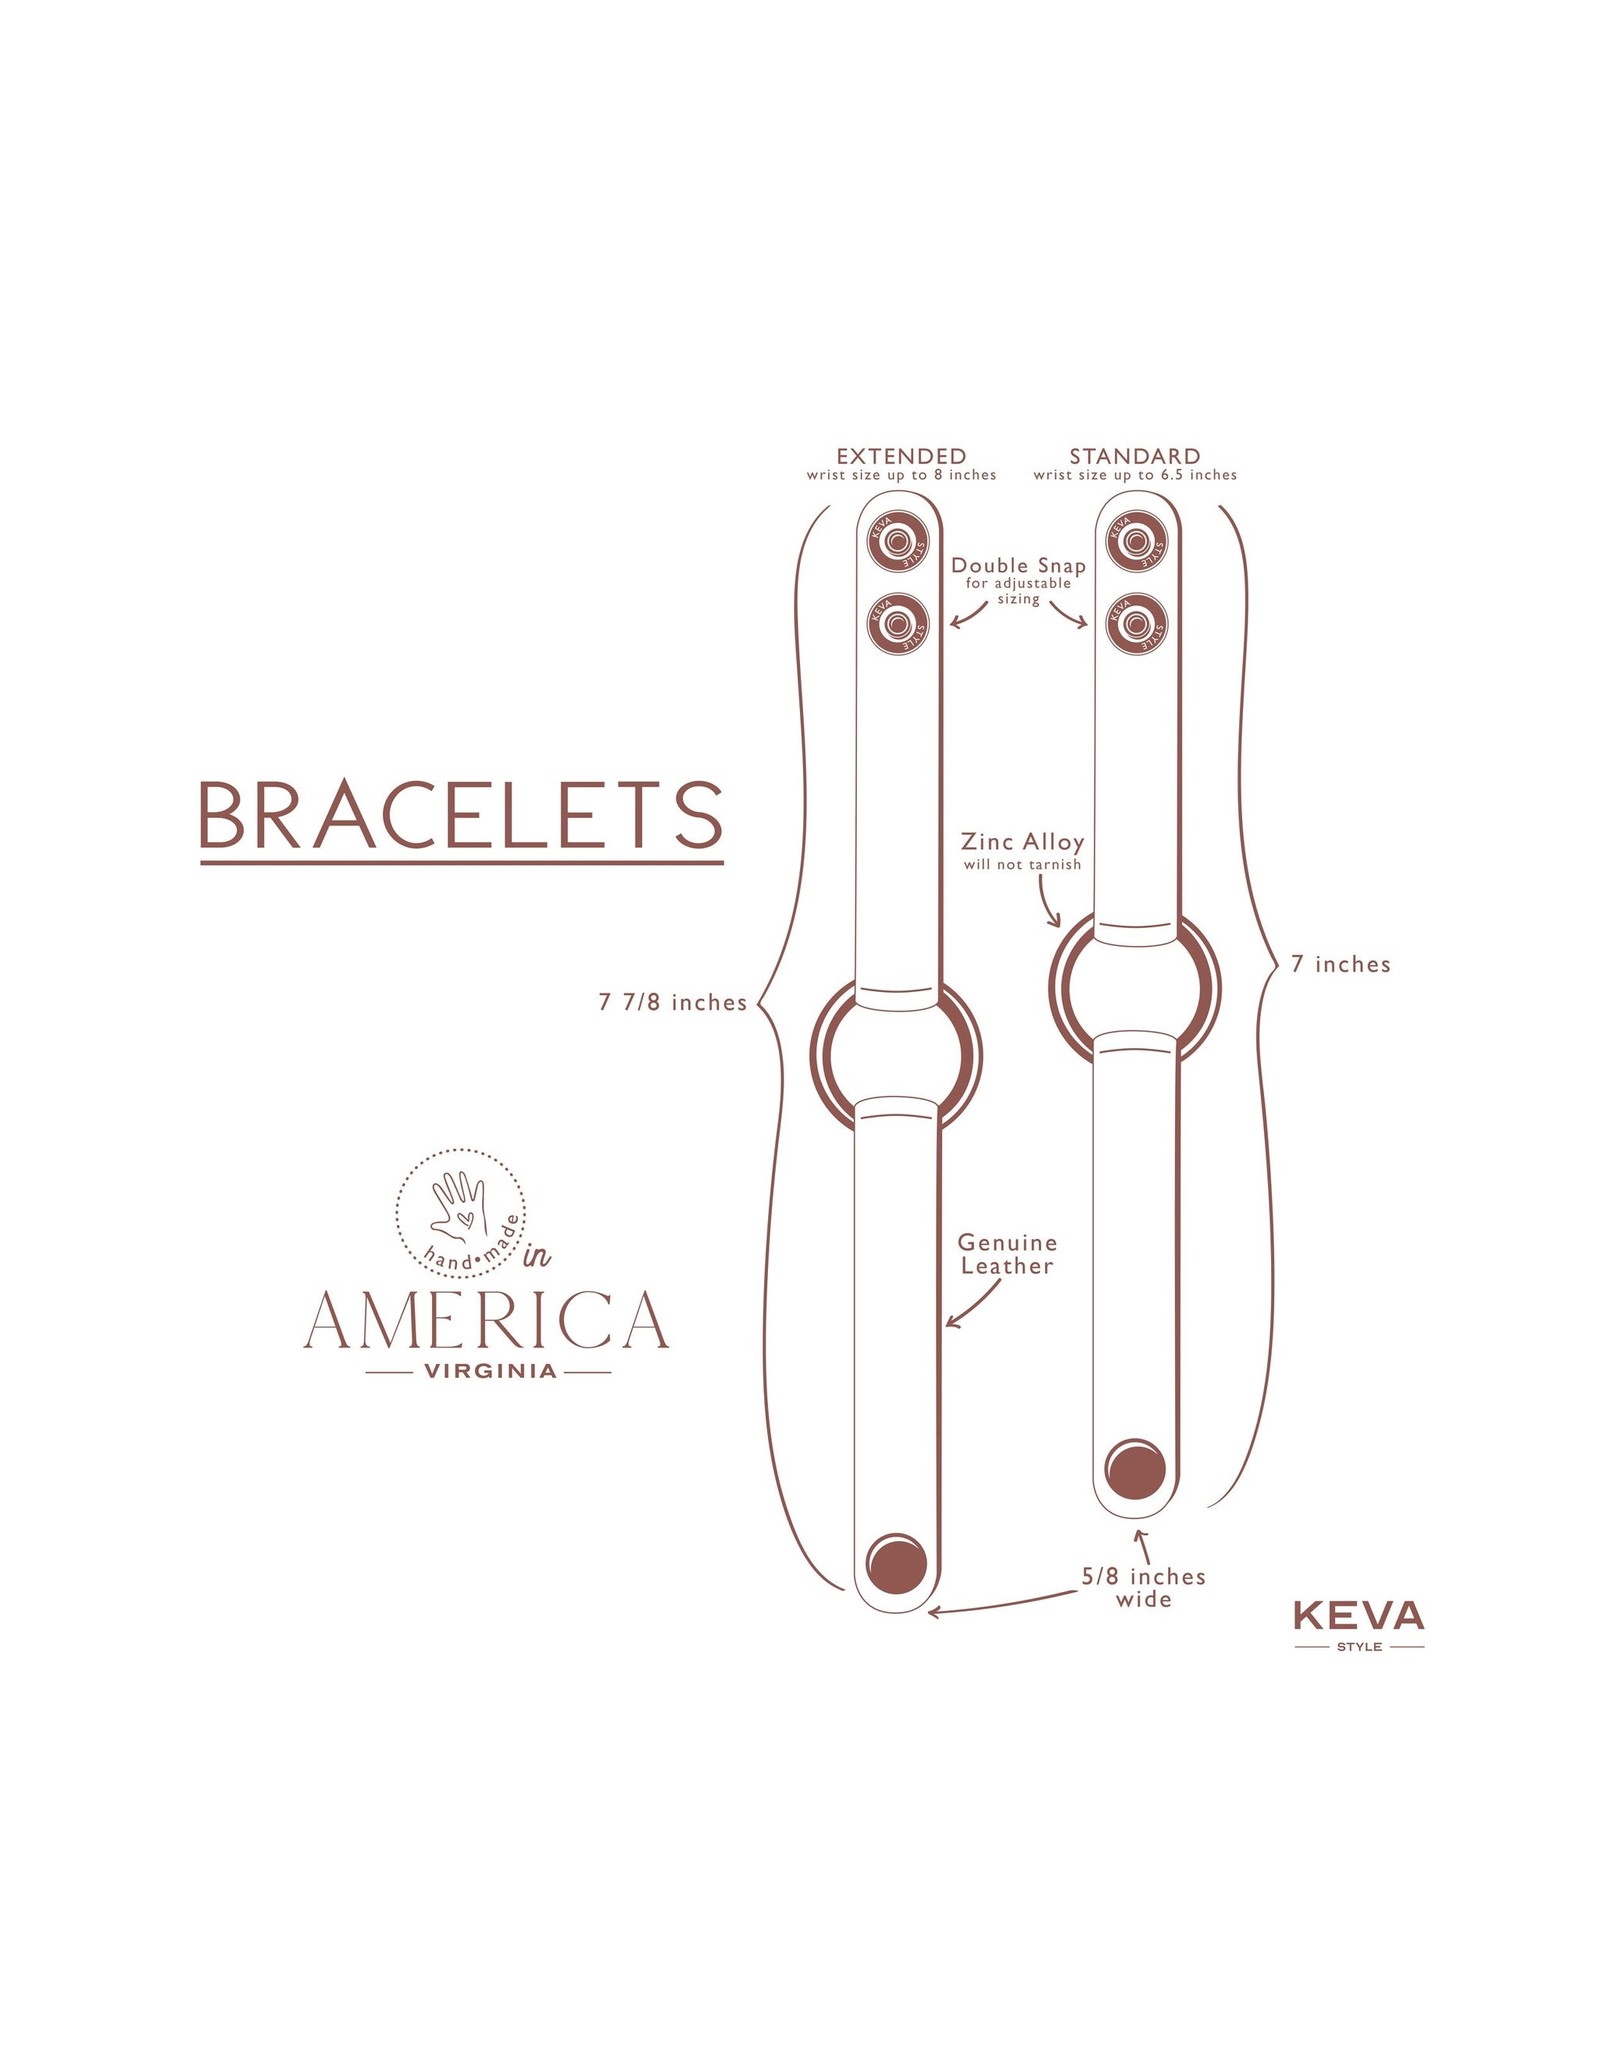 Keva Style Leather Bracelet